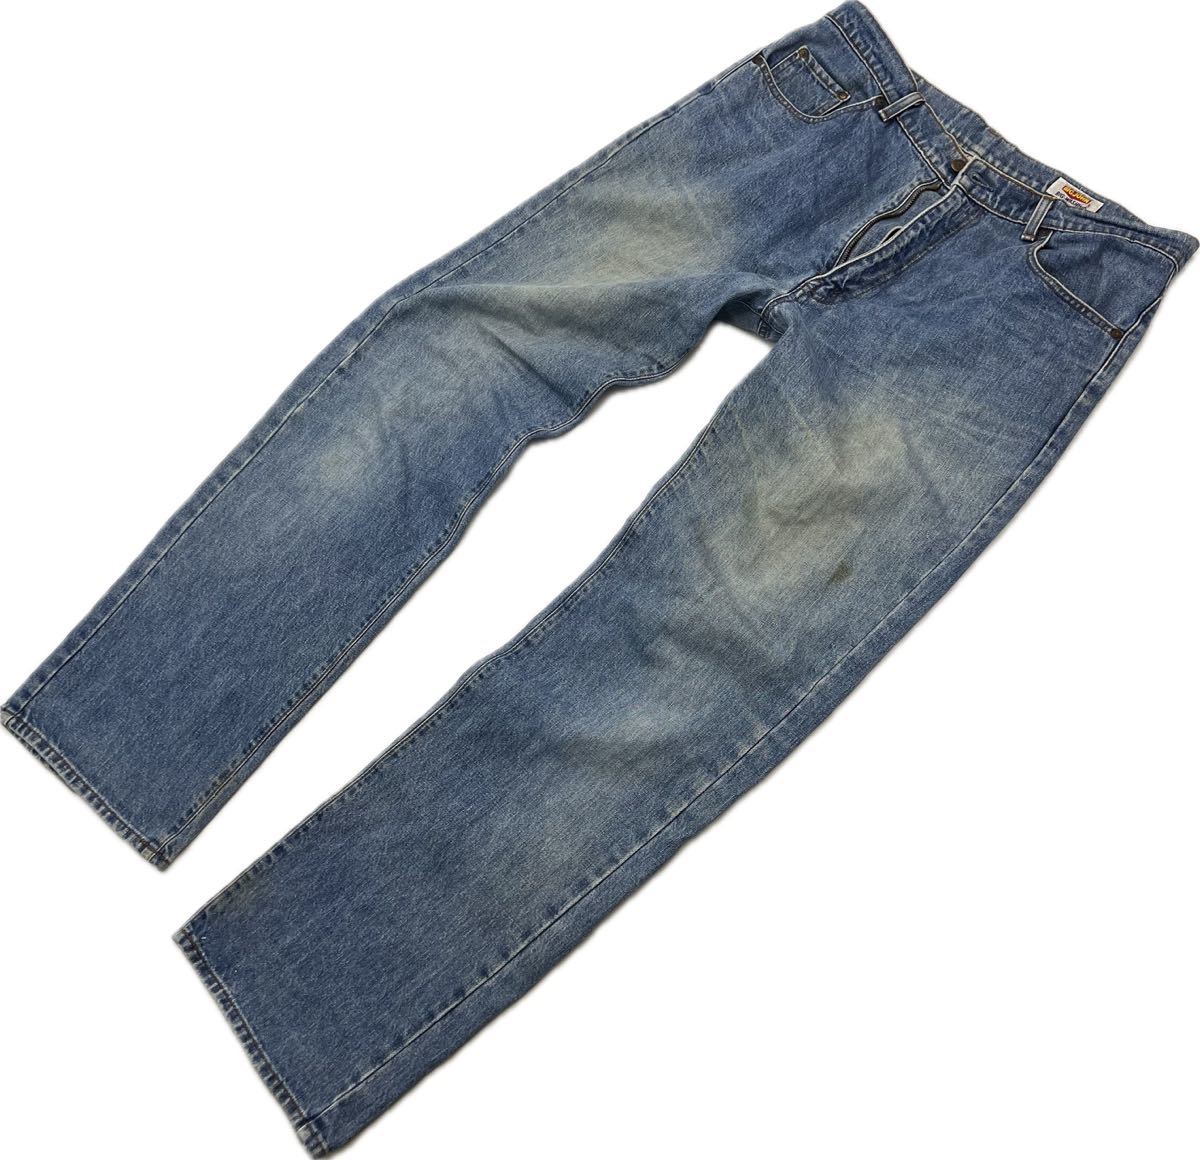 BIG JOHN * мягкий длина ..* Denim брюки голубой джинсы W38 84cm American Casual Street взрослый casual б/у одежда популярный Big John #Ja7118